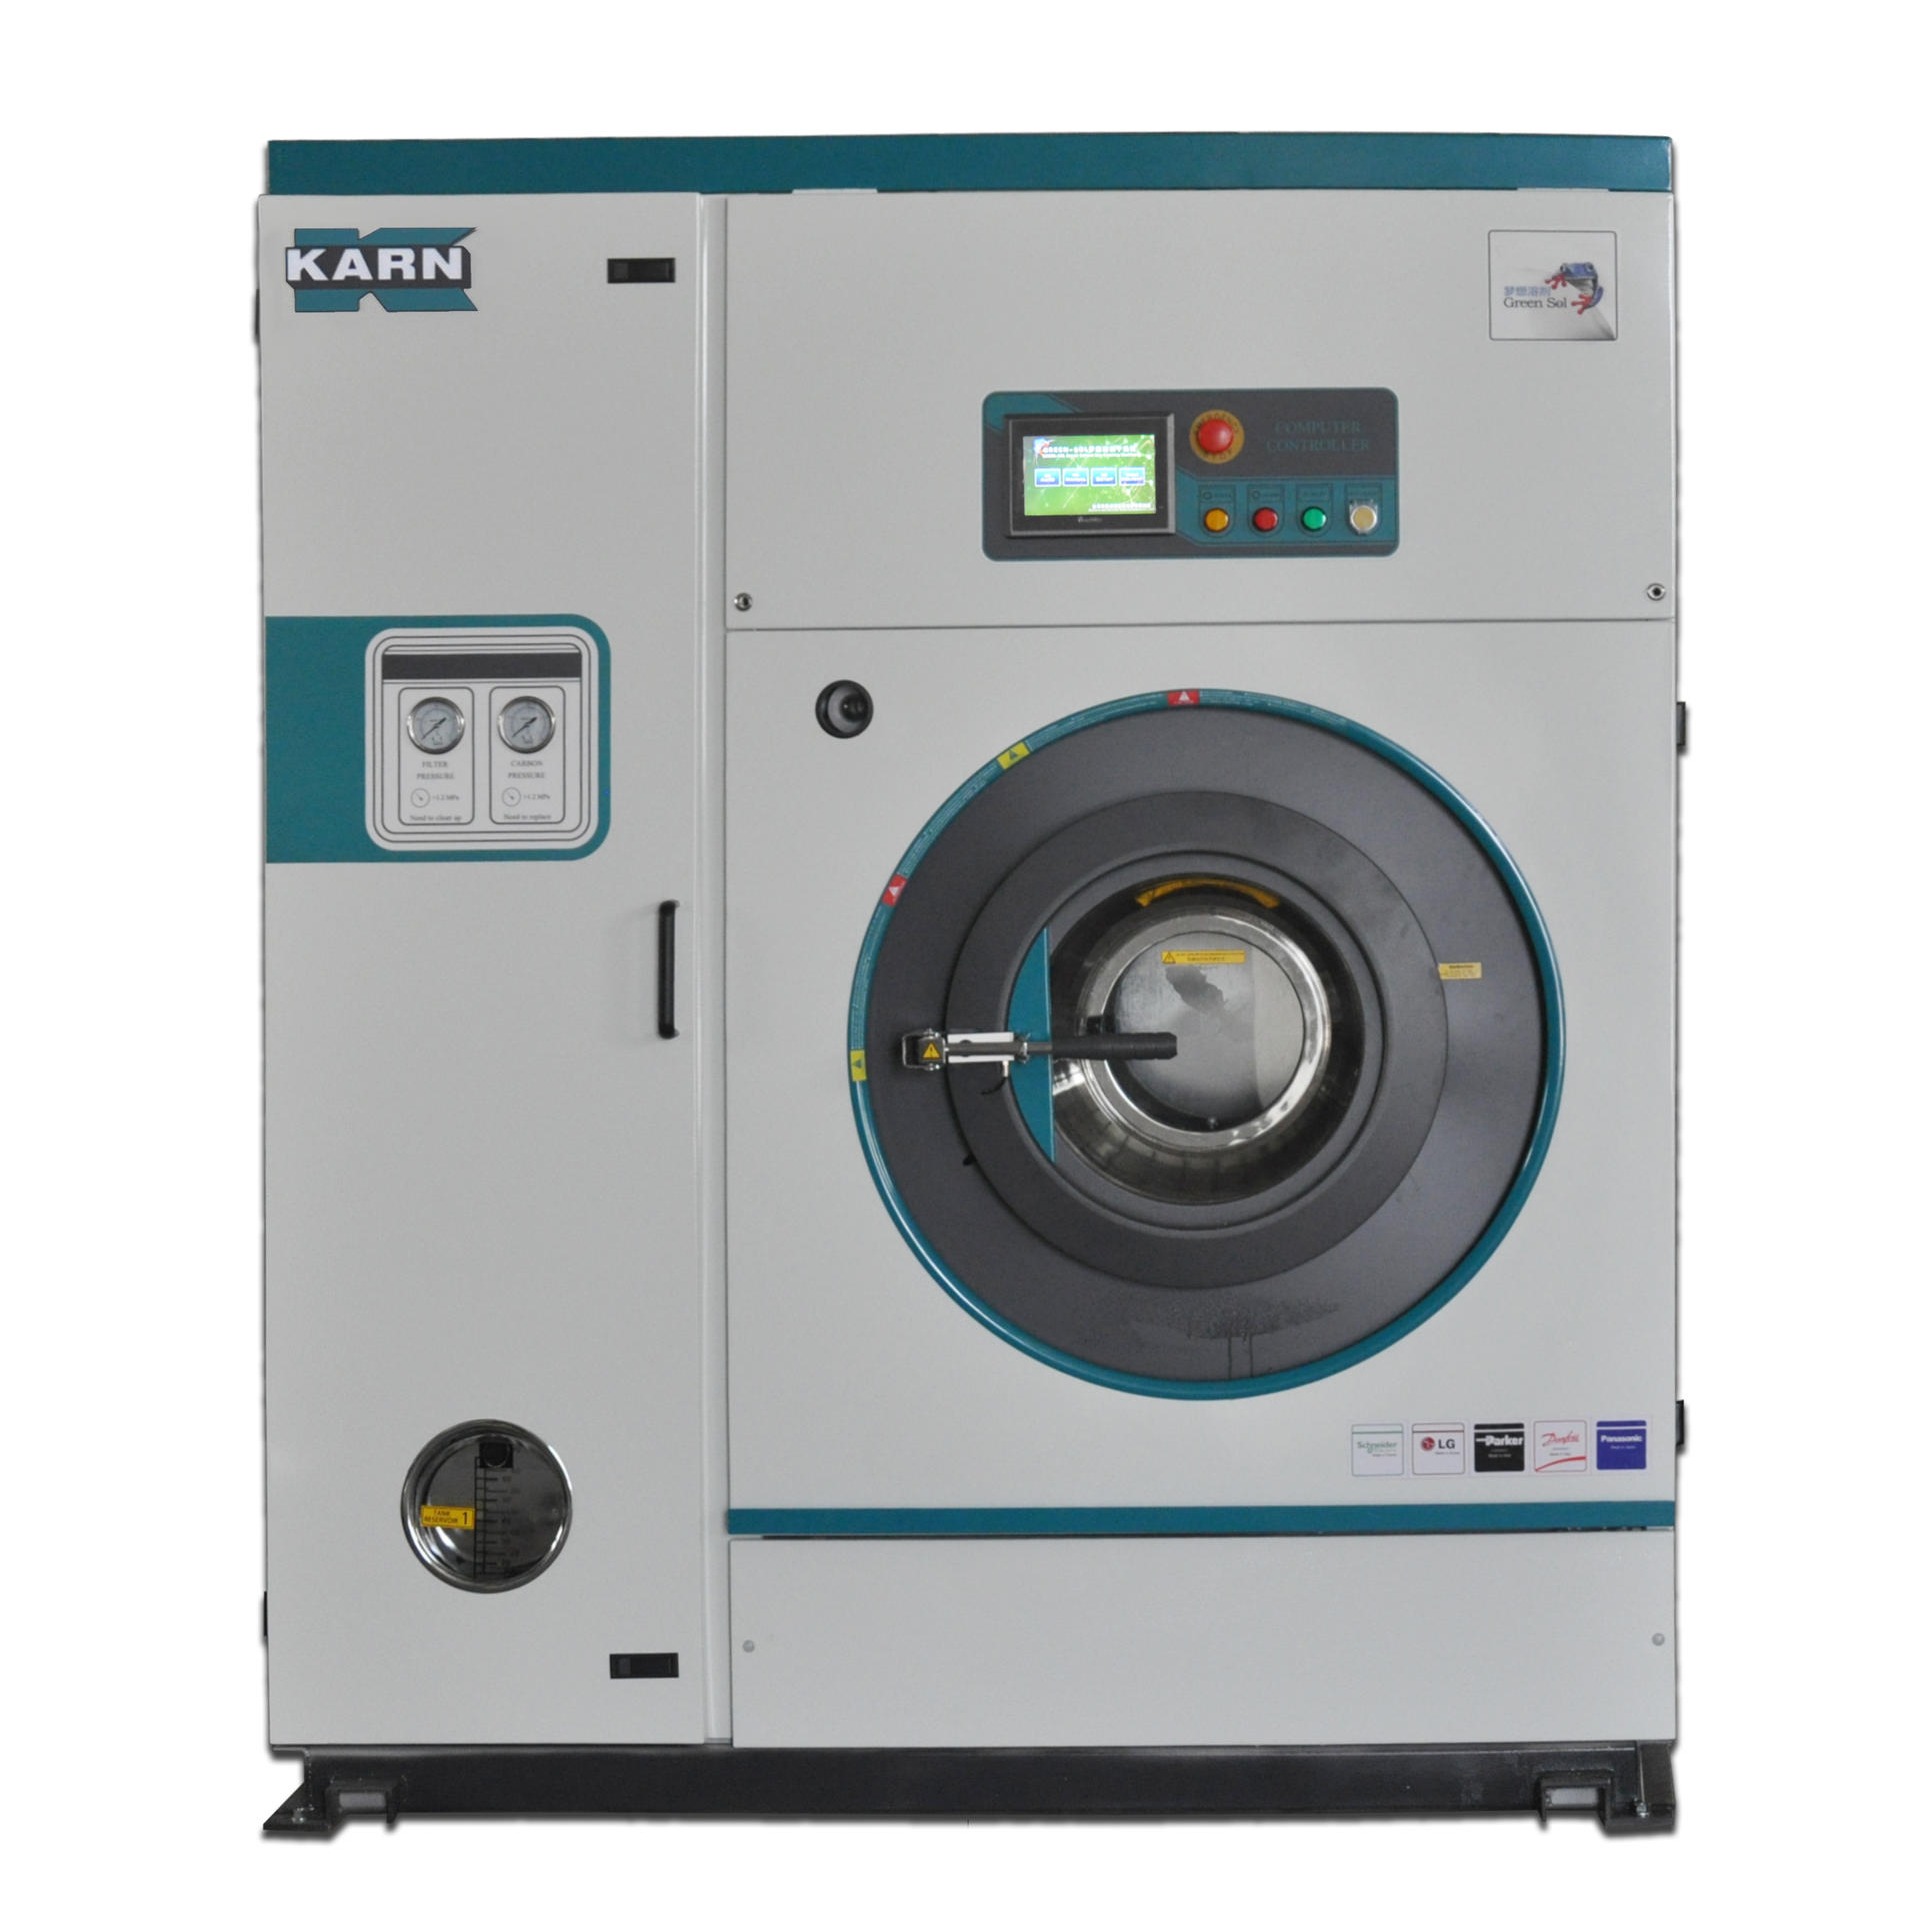 全封闭梦想溶剂干洗机B型 8公斤硅基溶剂干洗设备和第六代环保双溶剂干洗机器图片